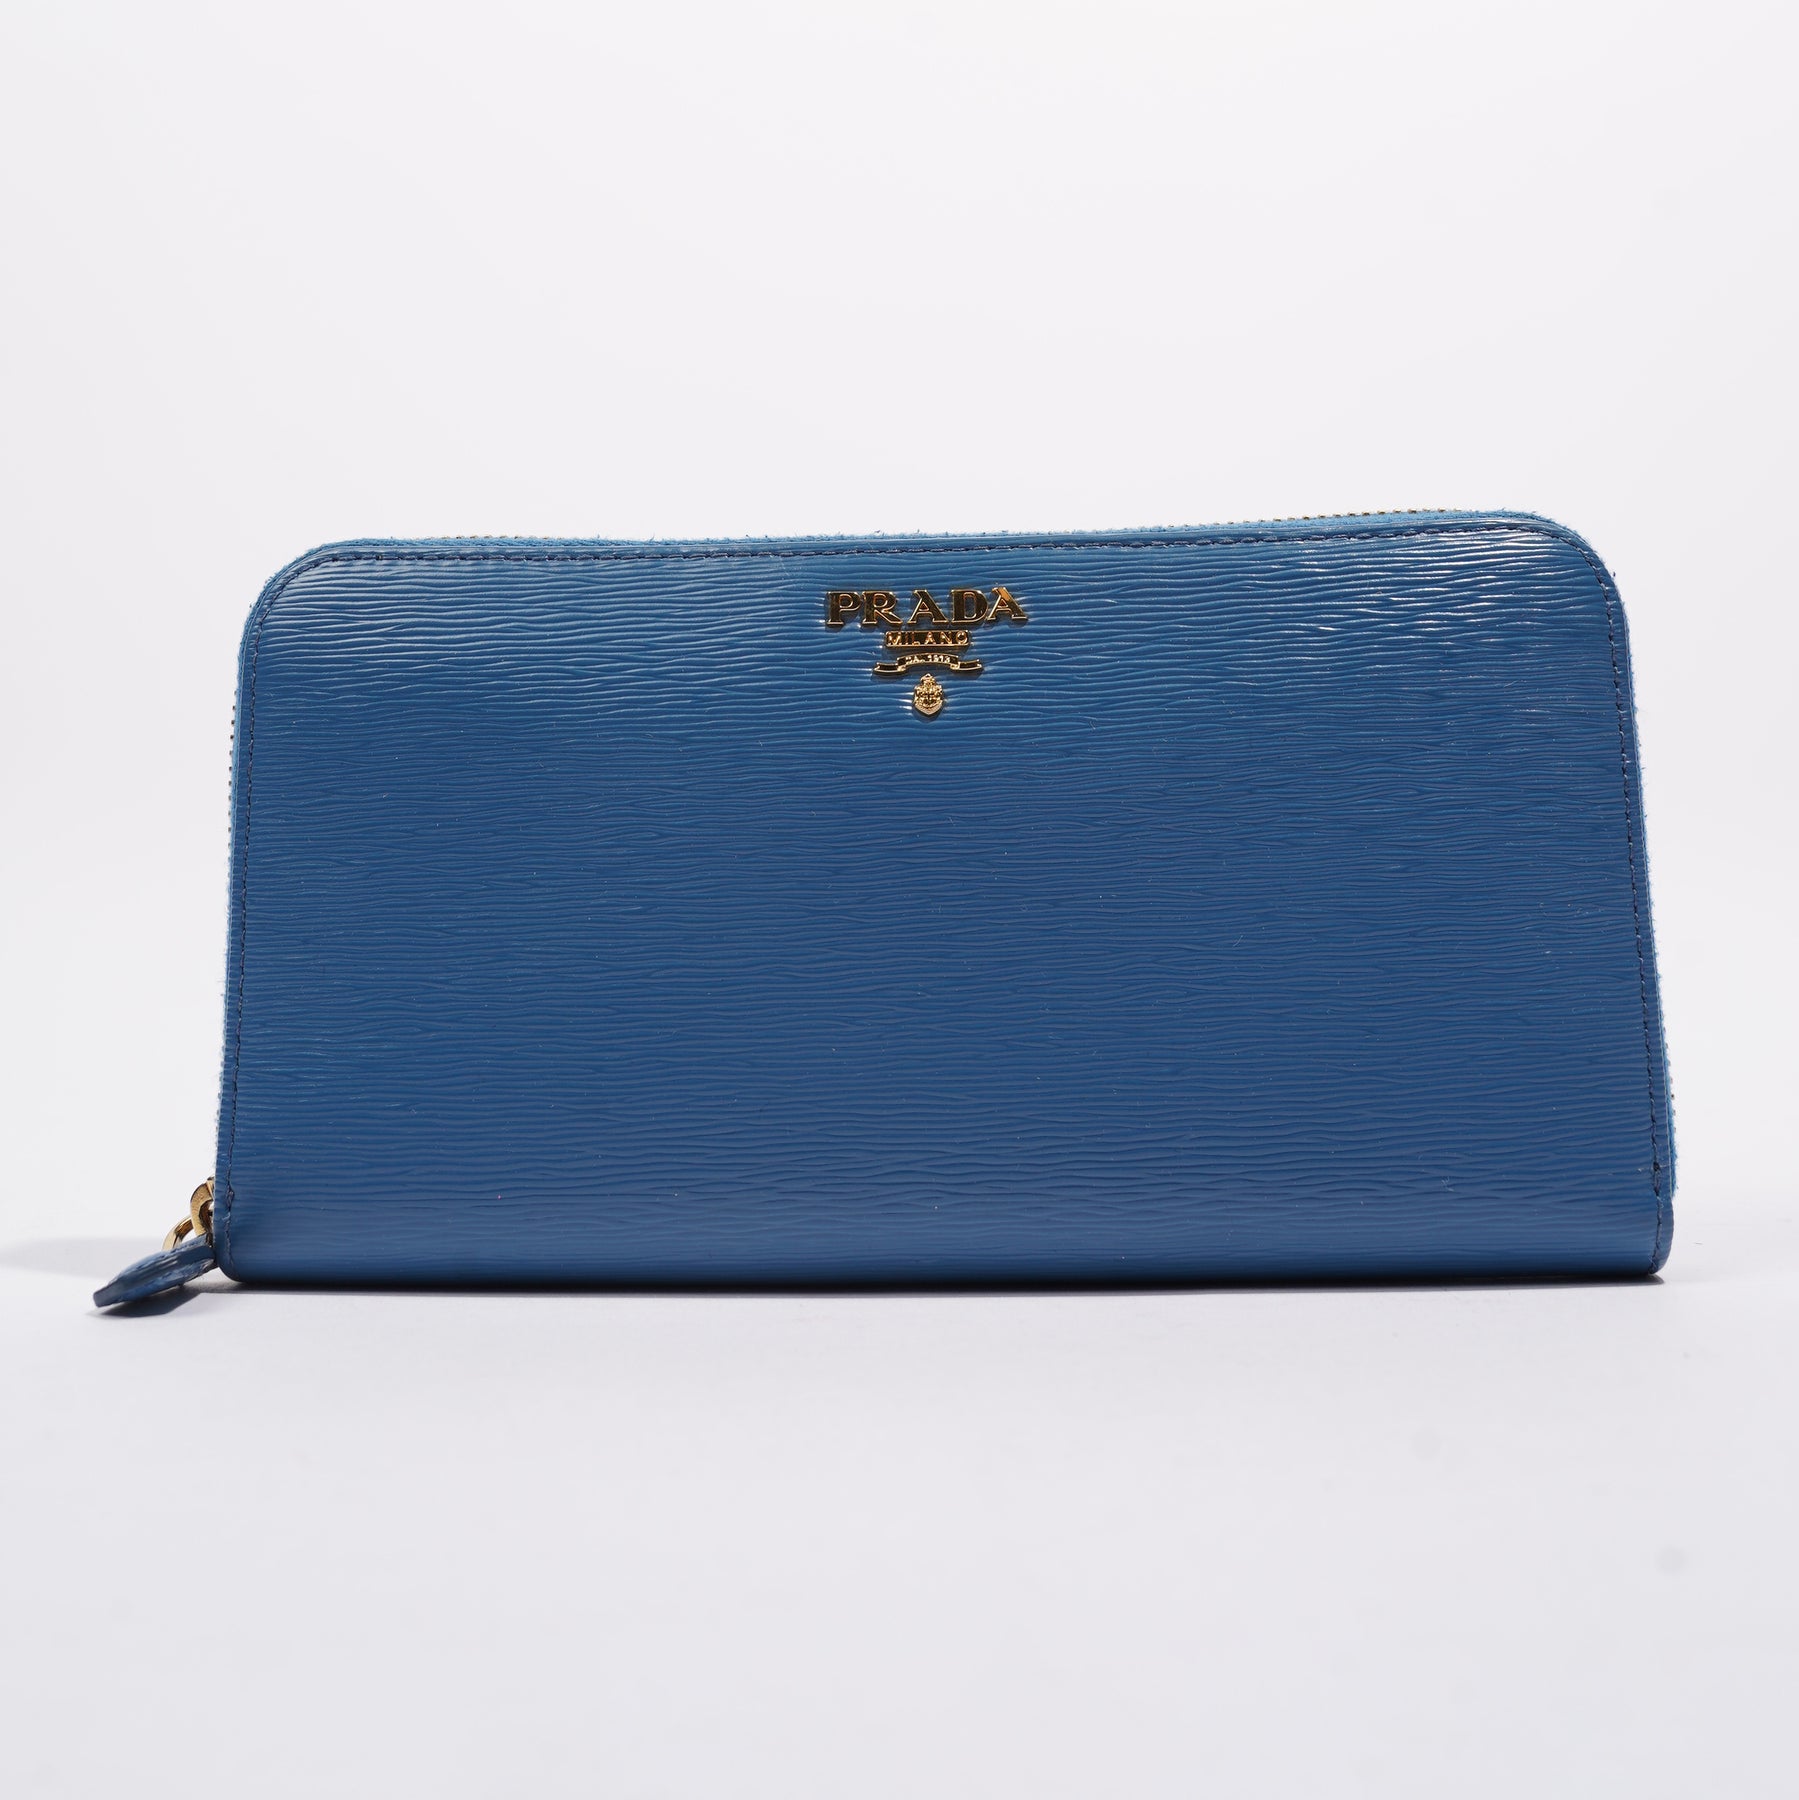 Prada Handbags : Bags & Accessories | Blue - Walmart.com